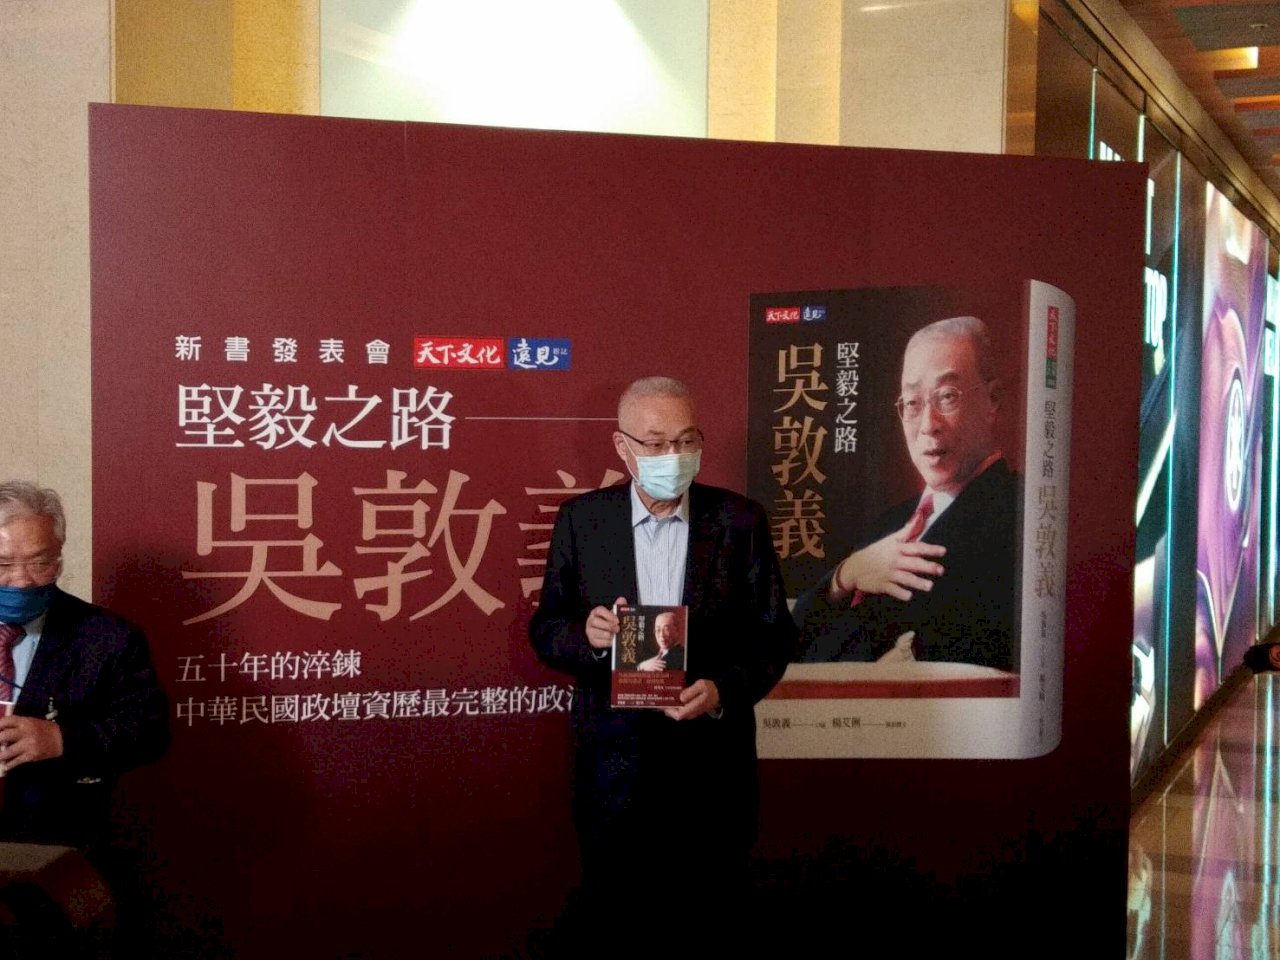 吳敦義新書「堅毅之路」發表會 馬王同台祝賀